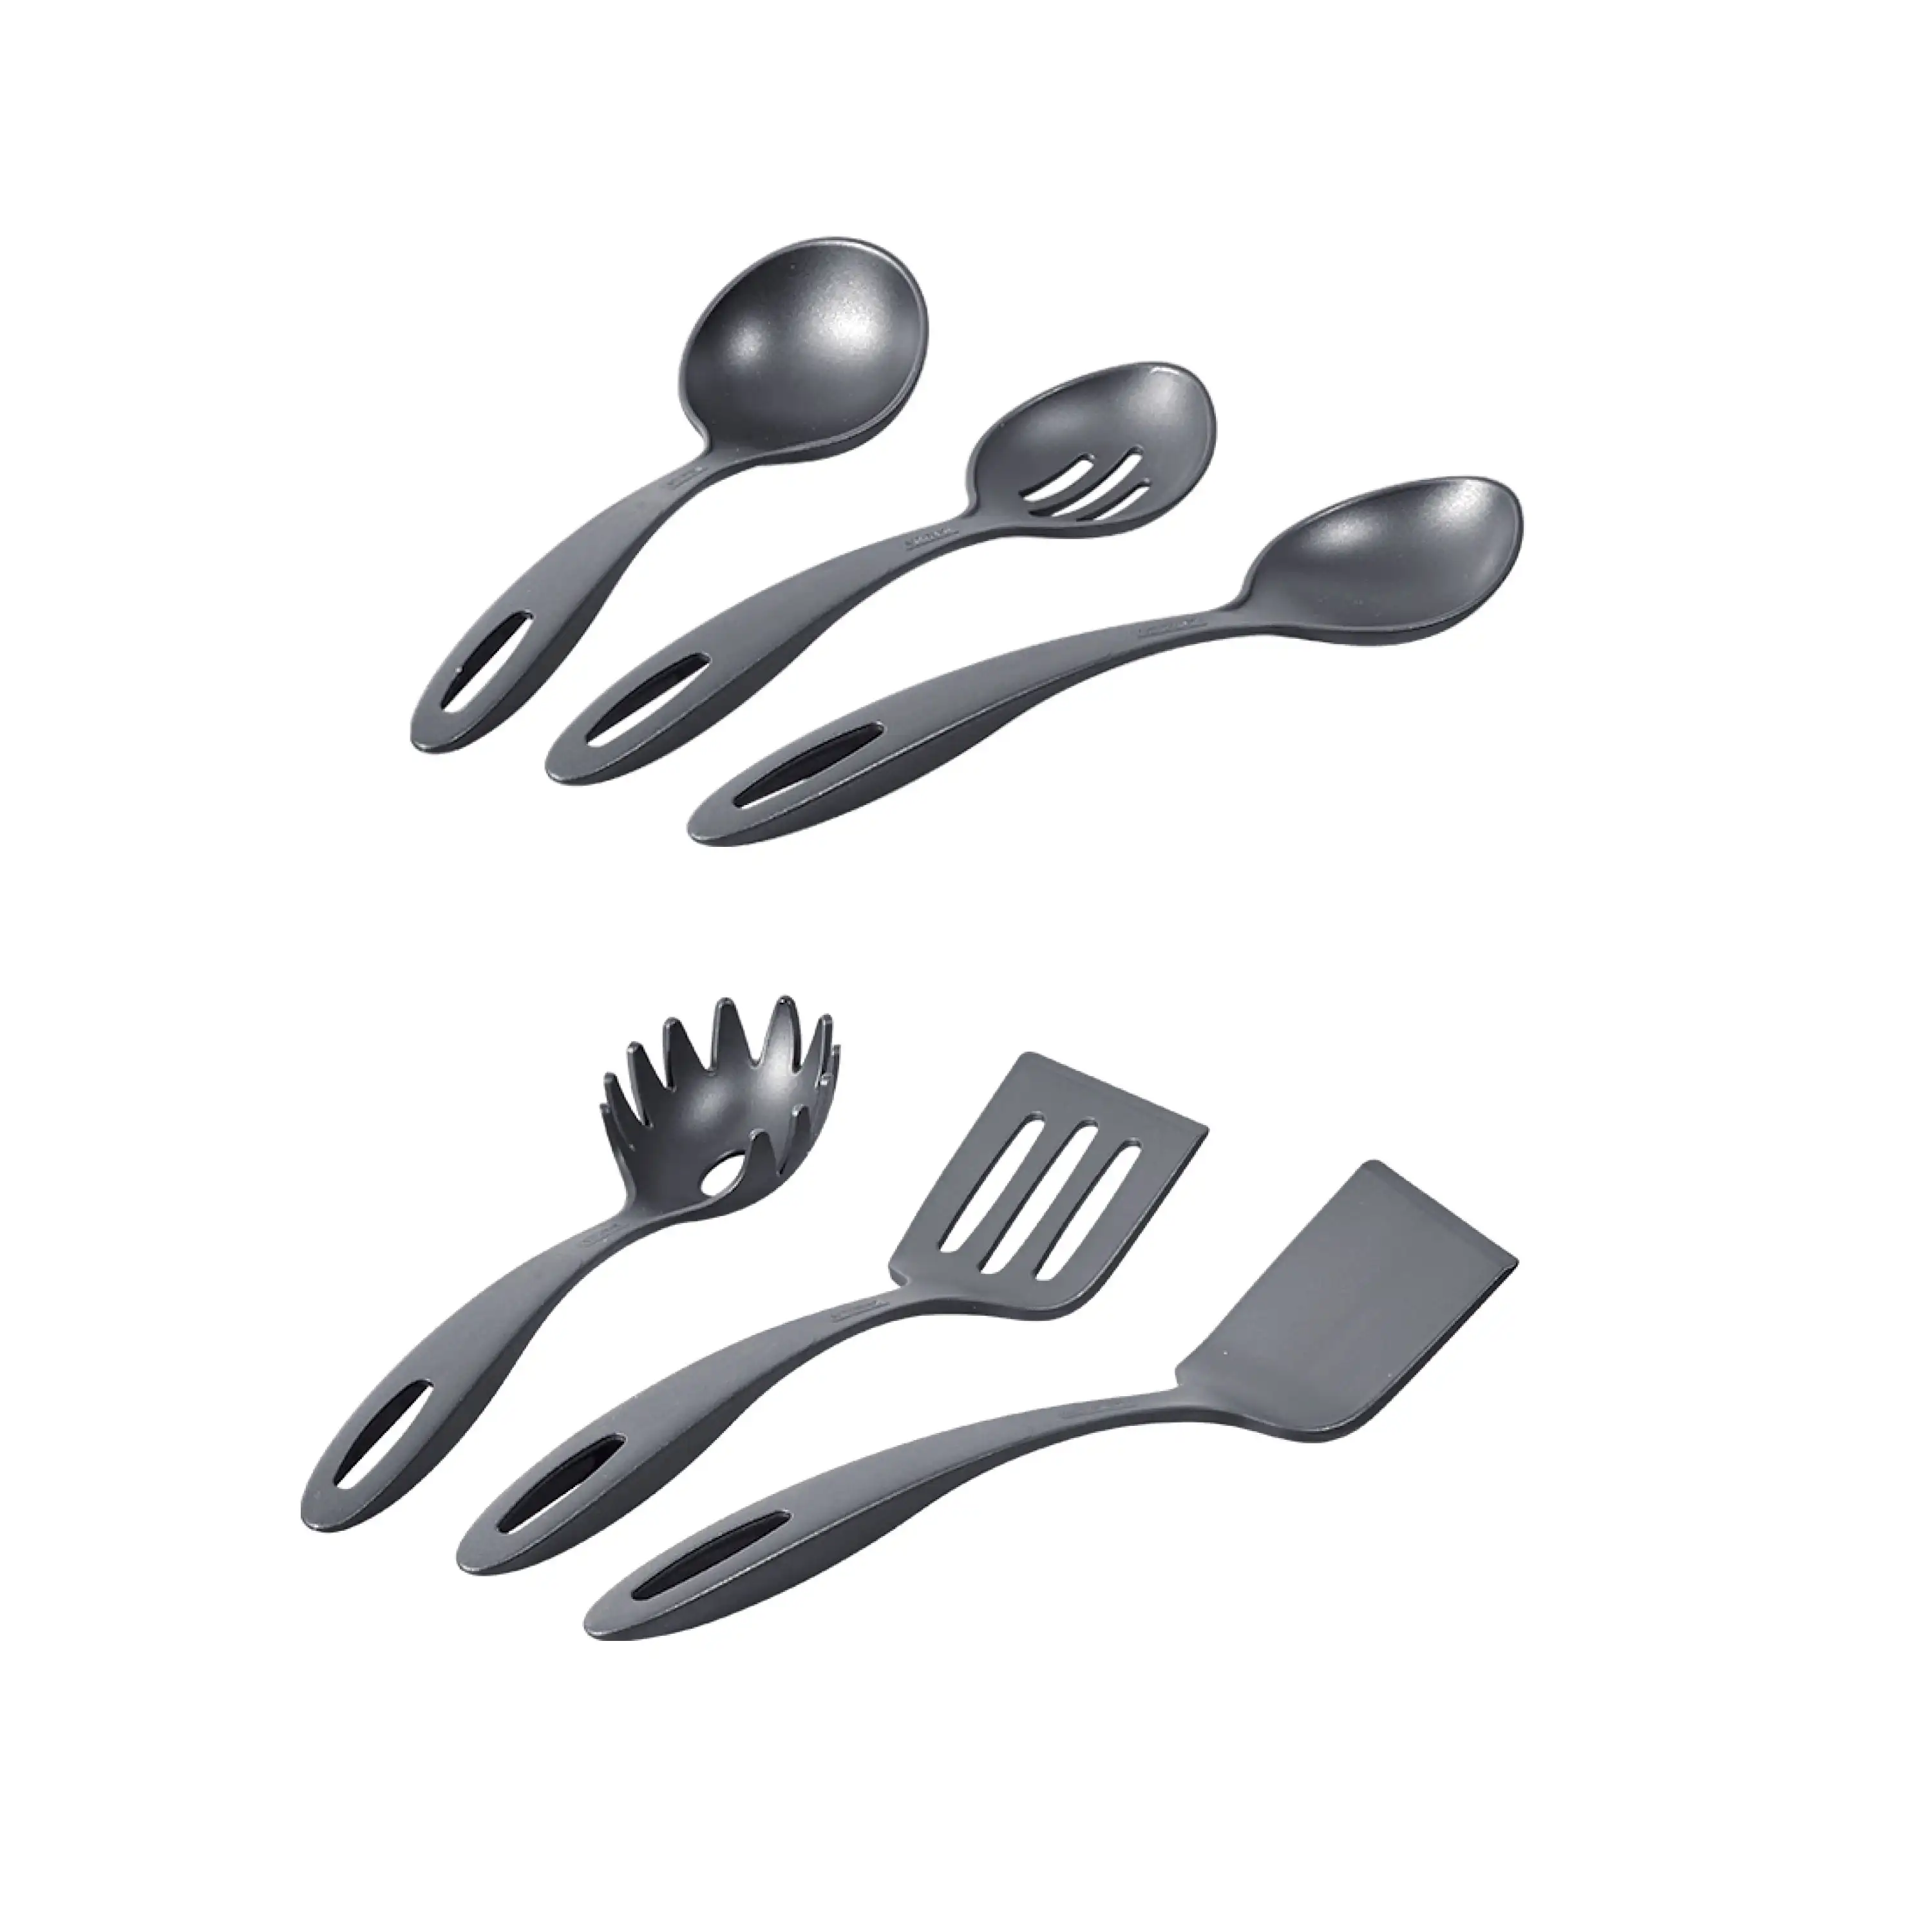 https://ae01.alicdn.com/kf/S5497ba54153c4e898c2fc557e12c487bD/Tramontina-15-Pc-Cookware-Set-Silver-Aluminum-Nonstick.jpg